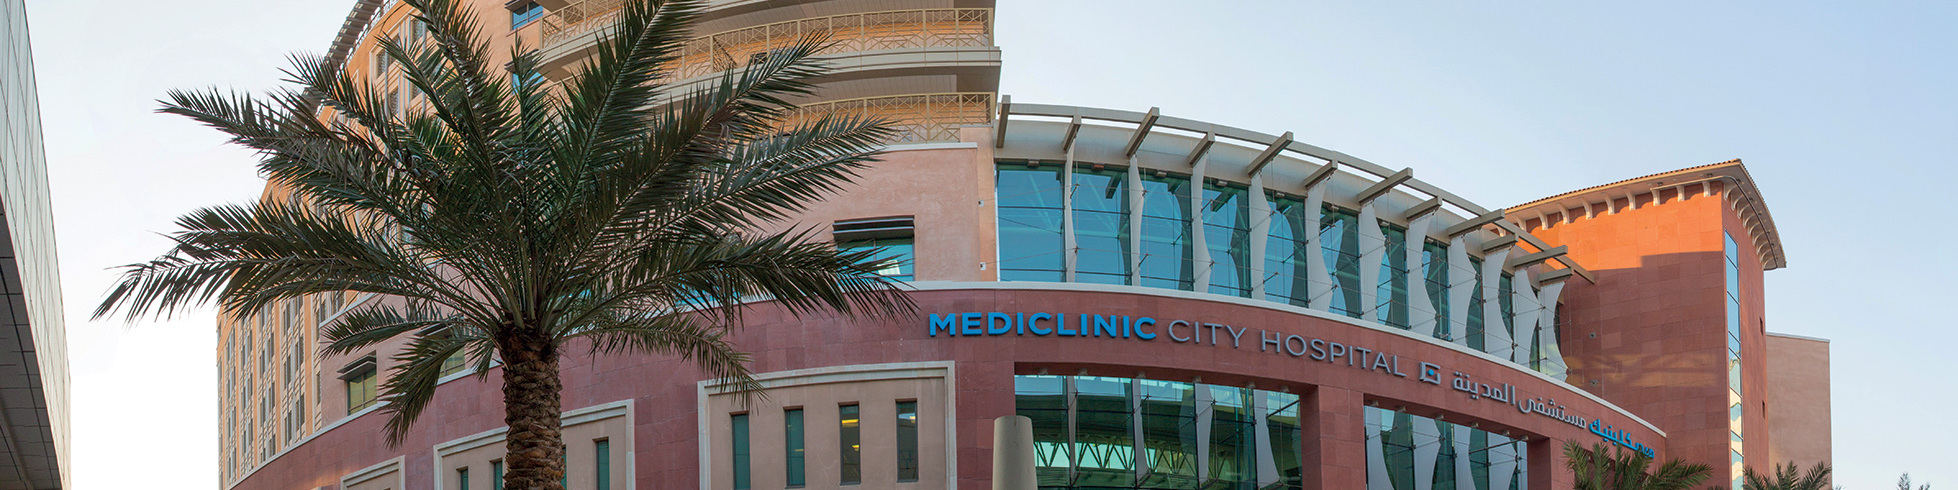 Mediclinic City Hospital exterior